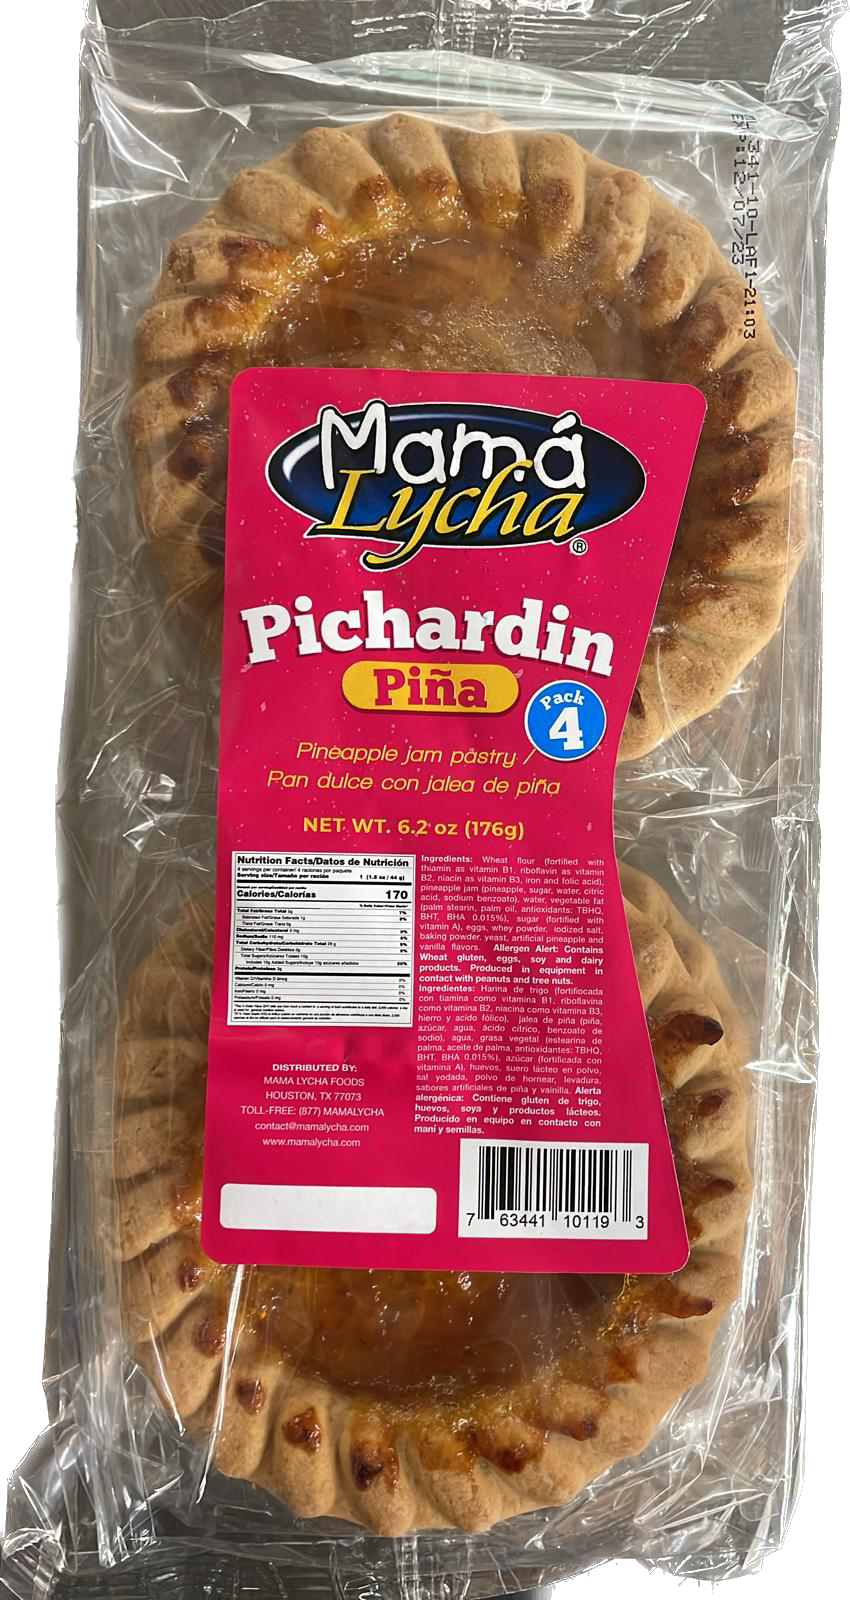 Pichardin Mama Lycha